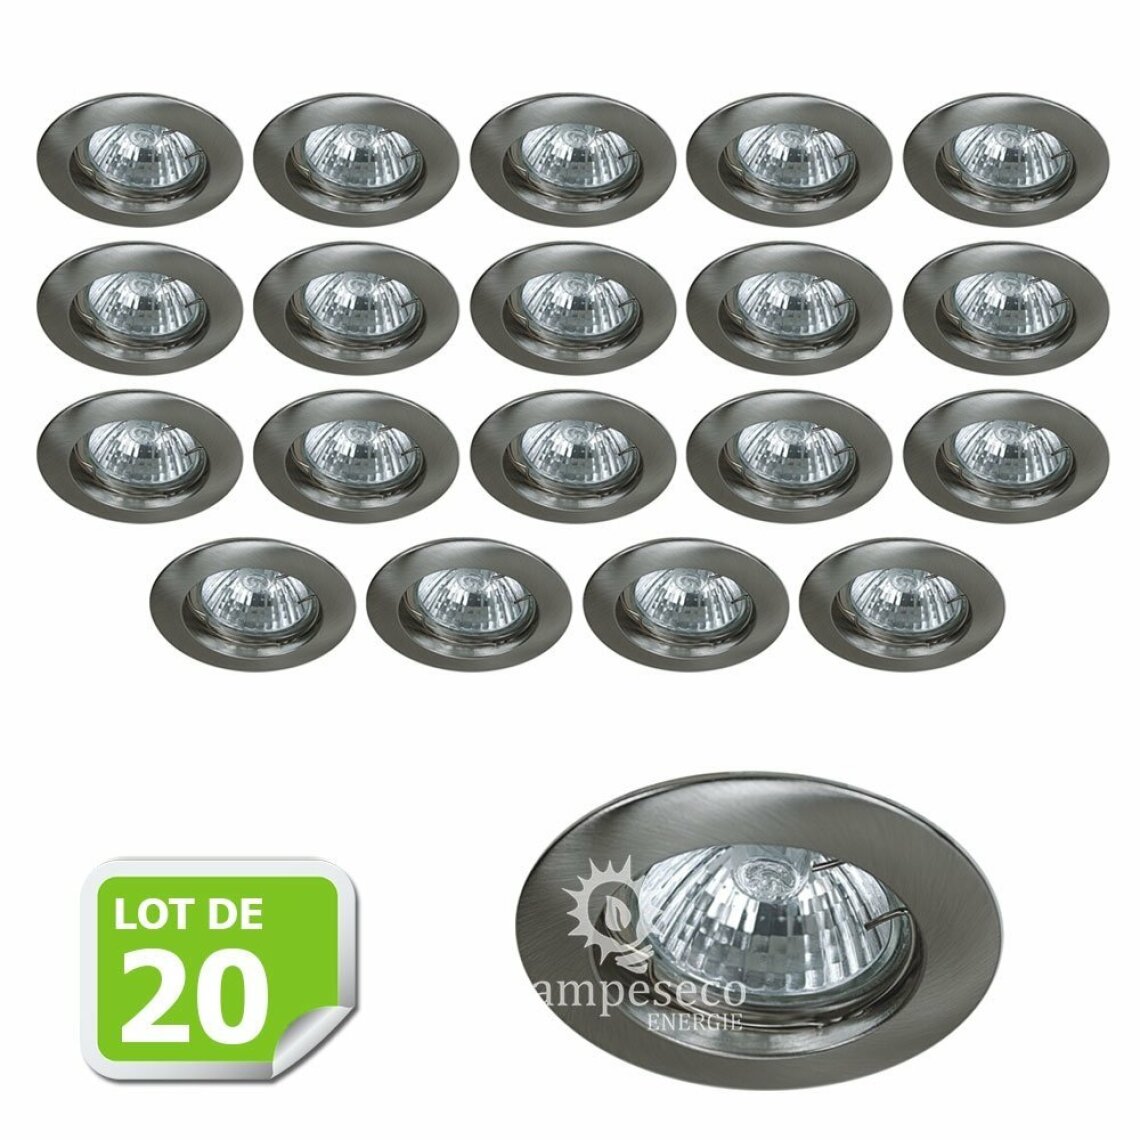 Lampesecoenergie - Lot de 20 Fixation de spot encastrable Classic Alu Brossé Diamètre 77mm ref. 949 - Boîtes d'encastrement